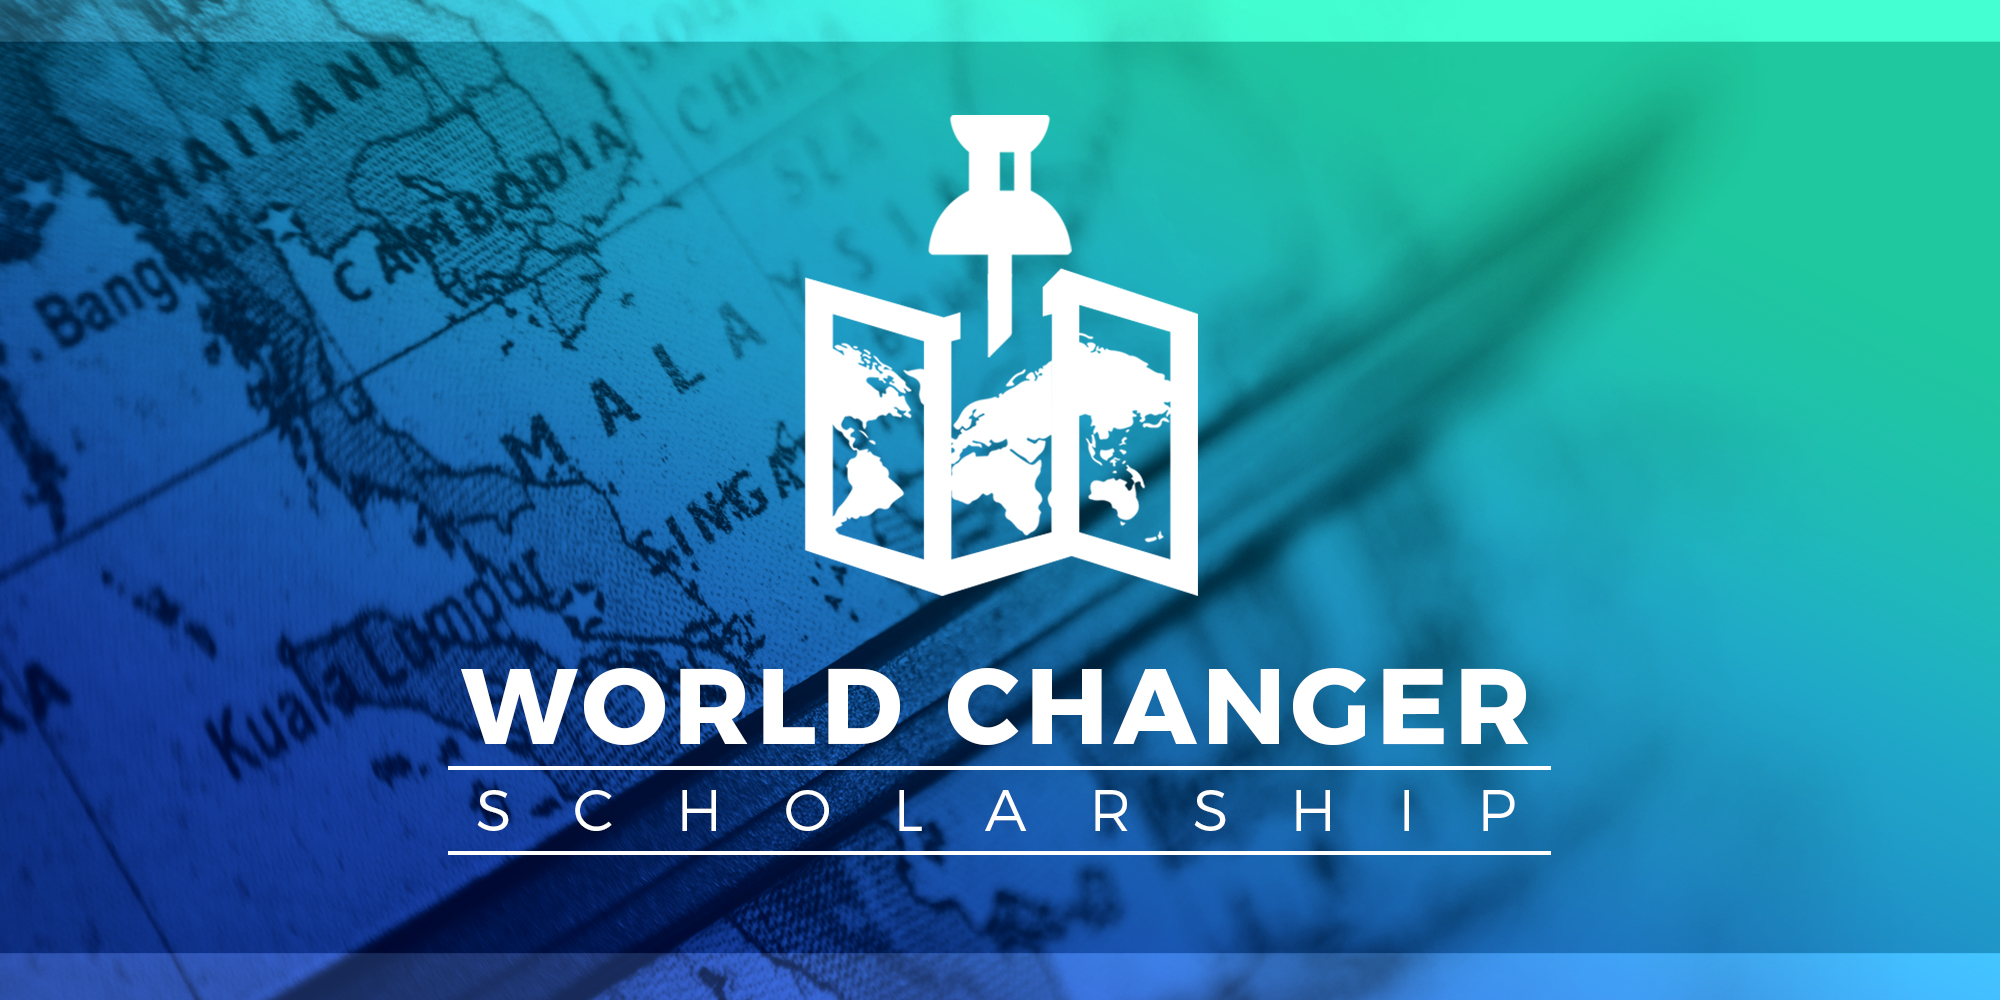 World Changer Scholarship